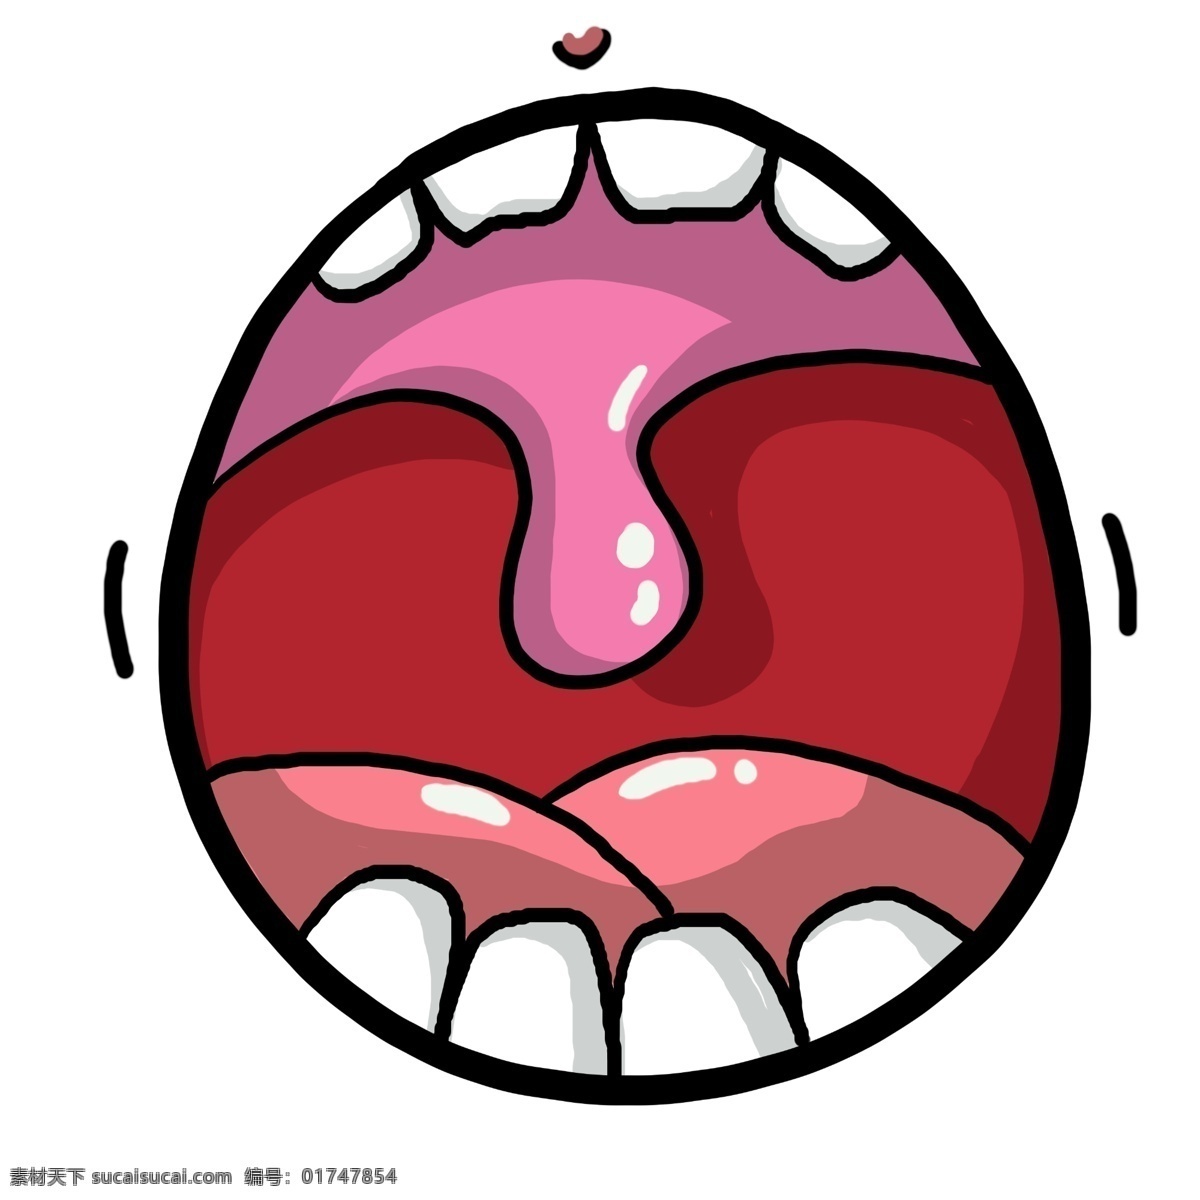 人体 器官 口腔 插画 红色的口腔 人体的口腔 白色的牙齿 红色的舌头 卡通的插画 口腔的插画